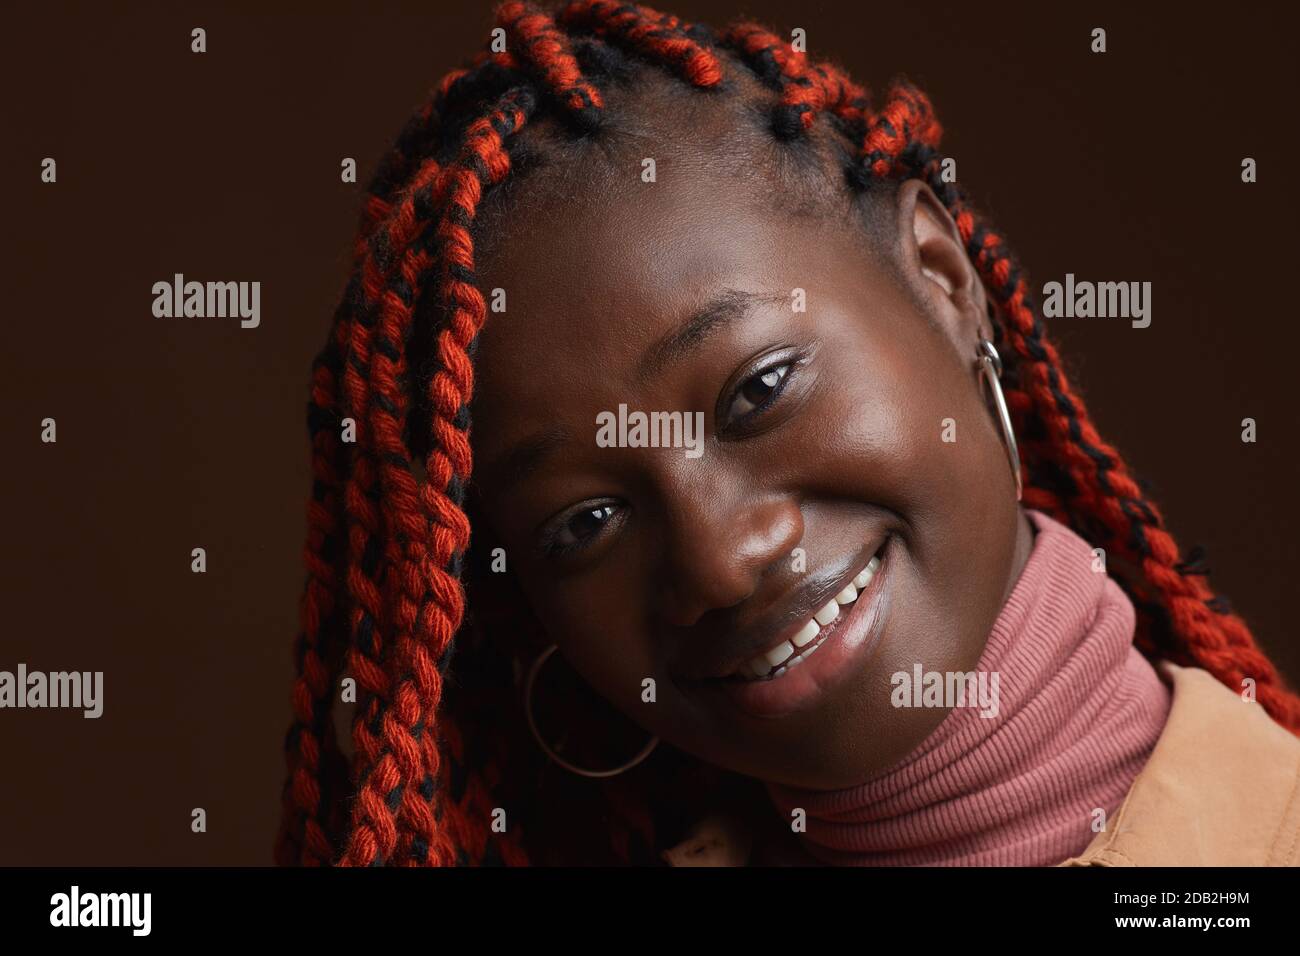 Nahaufnahme Porträt der stilvollen afroamerikanischen Frau mit geflochtenen Haaren Lächelnd, während er vor dunkelbraunem Hintergrund im Studio posiert Stockfoto